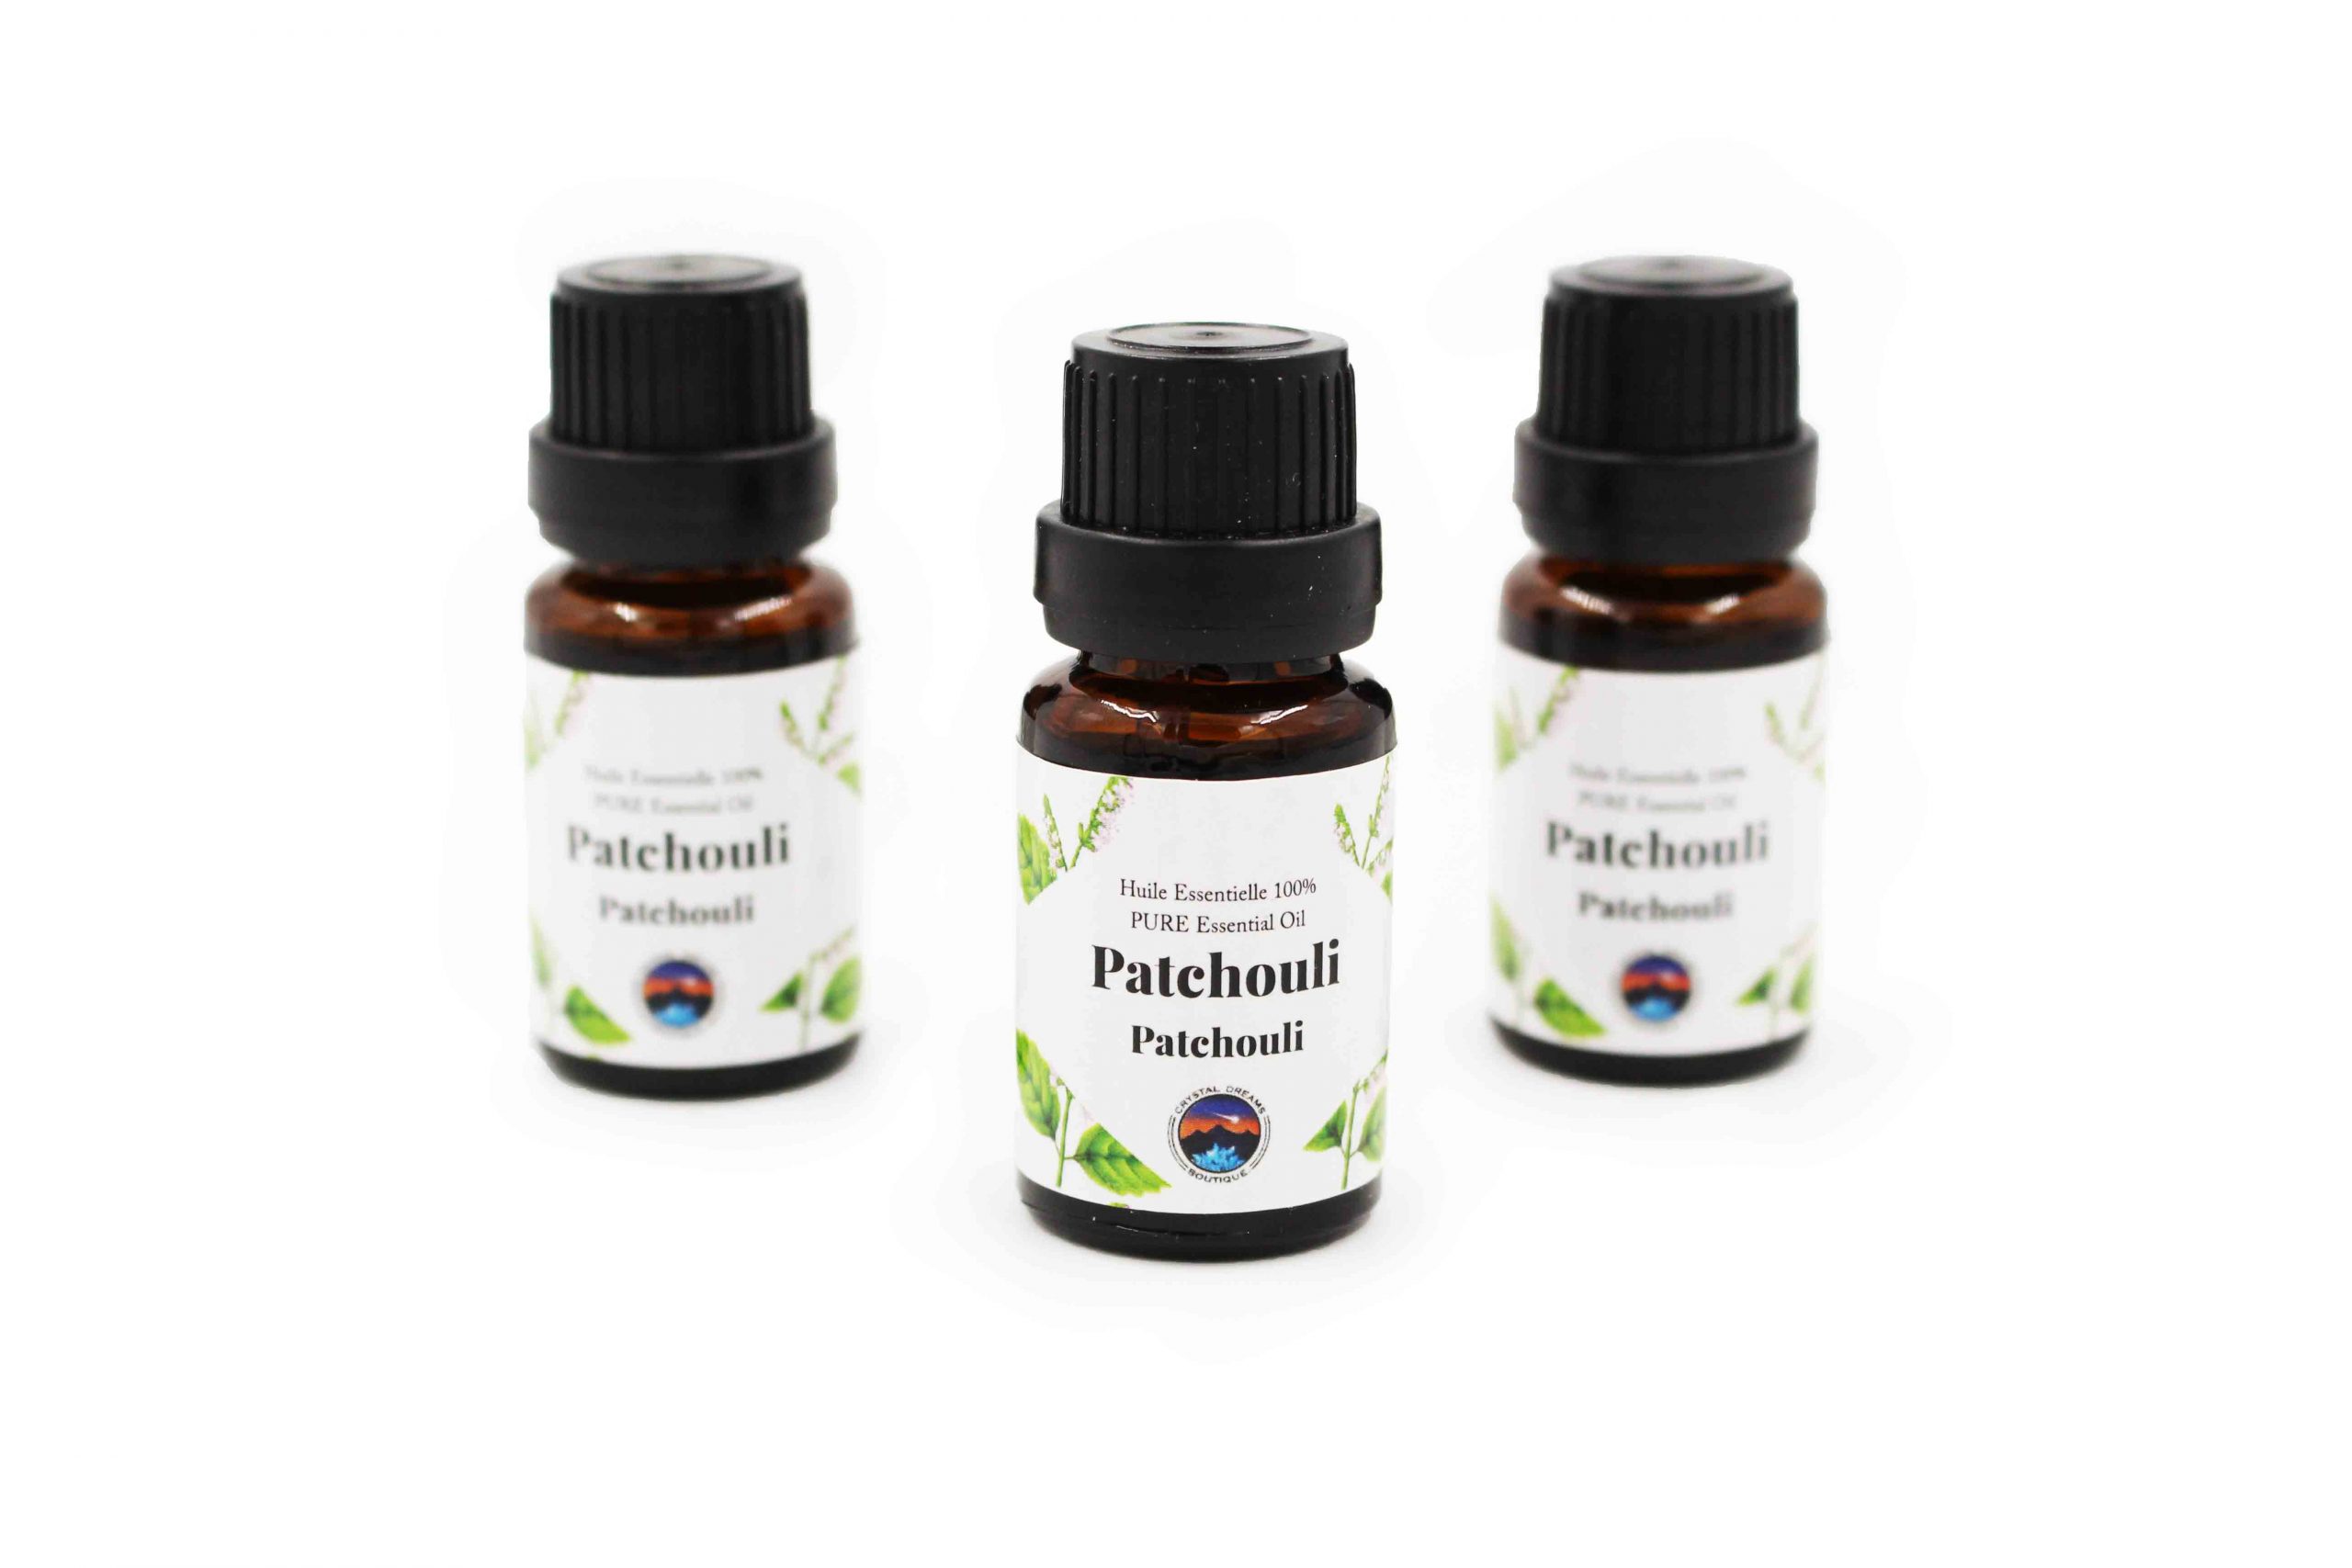 Patchouli Crystal Dreams Essential Oil - Crystal Dreams